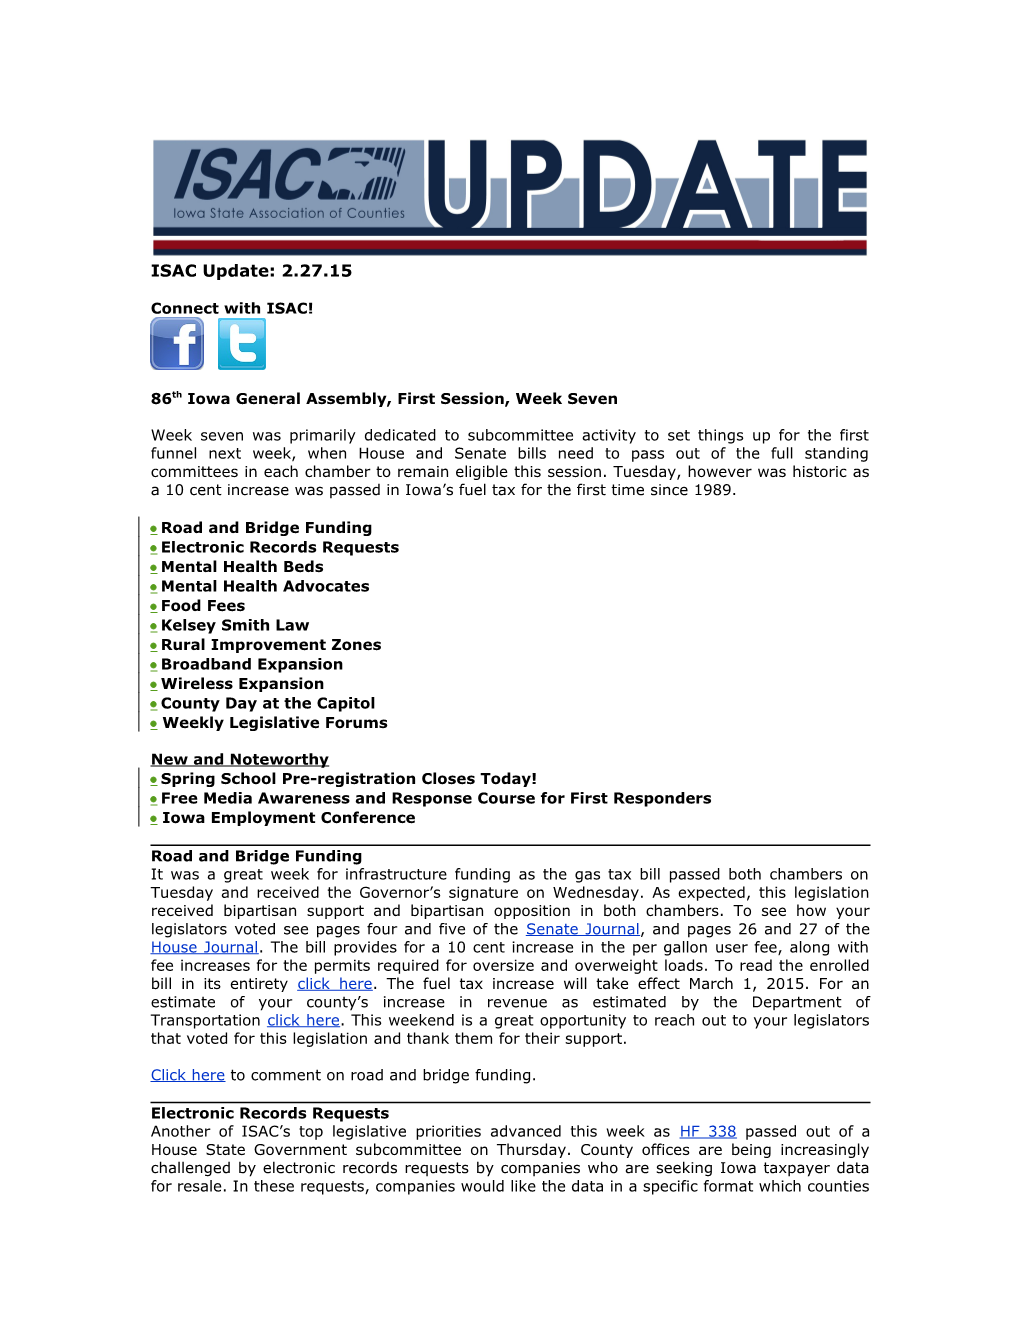 ISAC Legislative Update s3